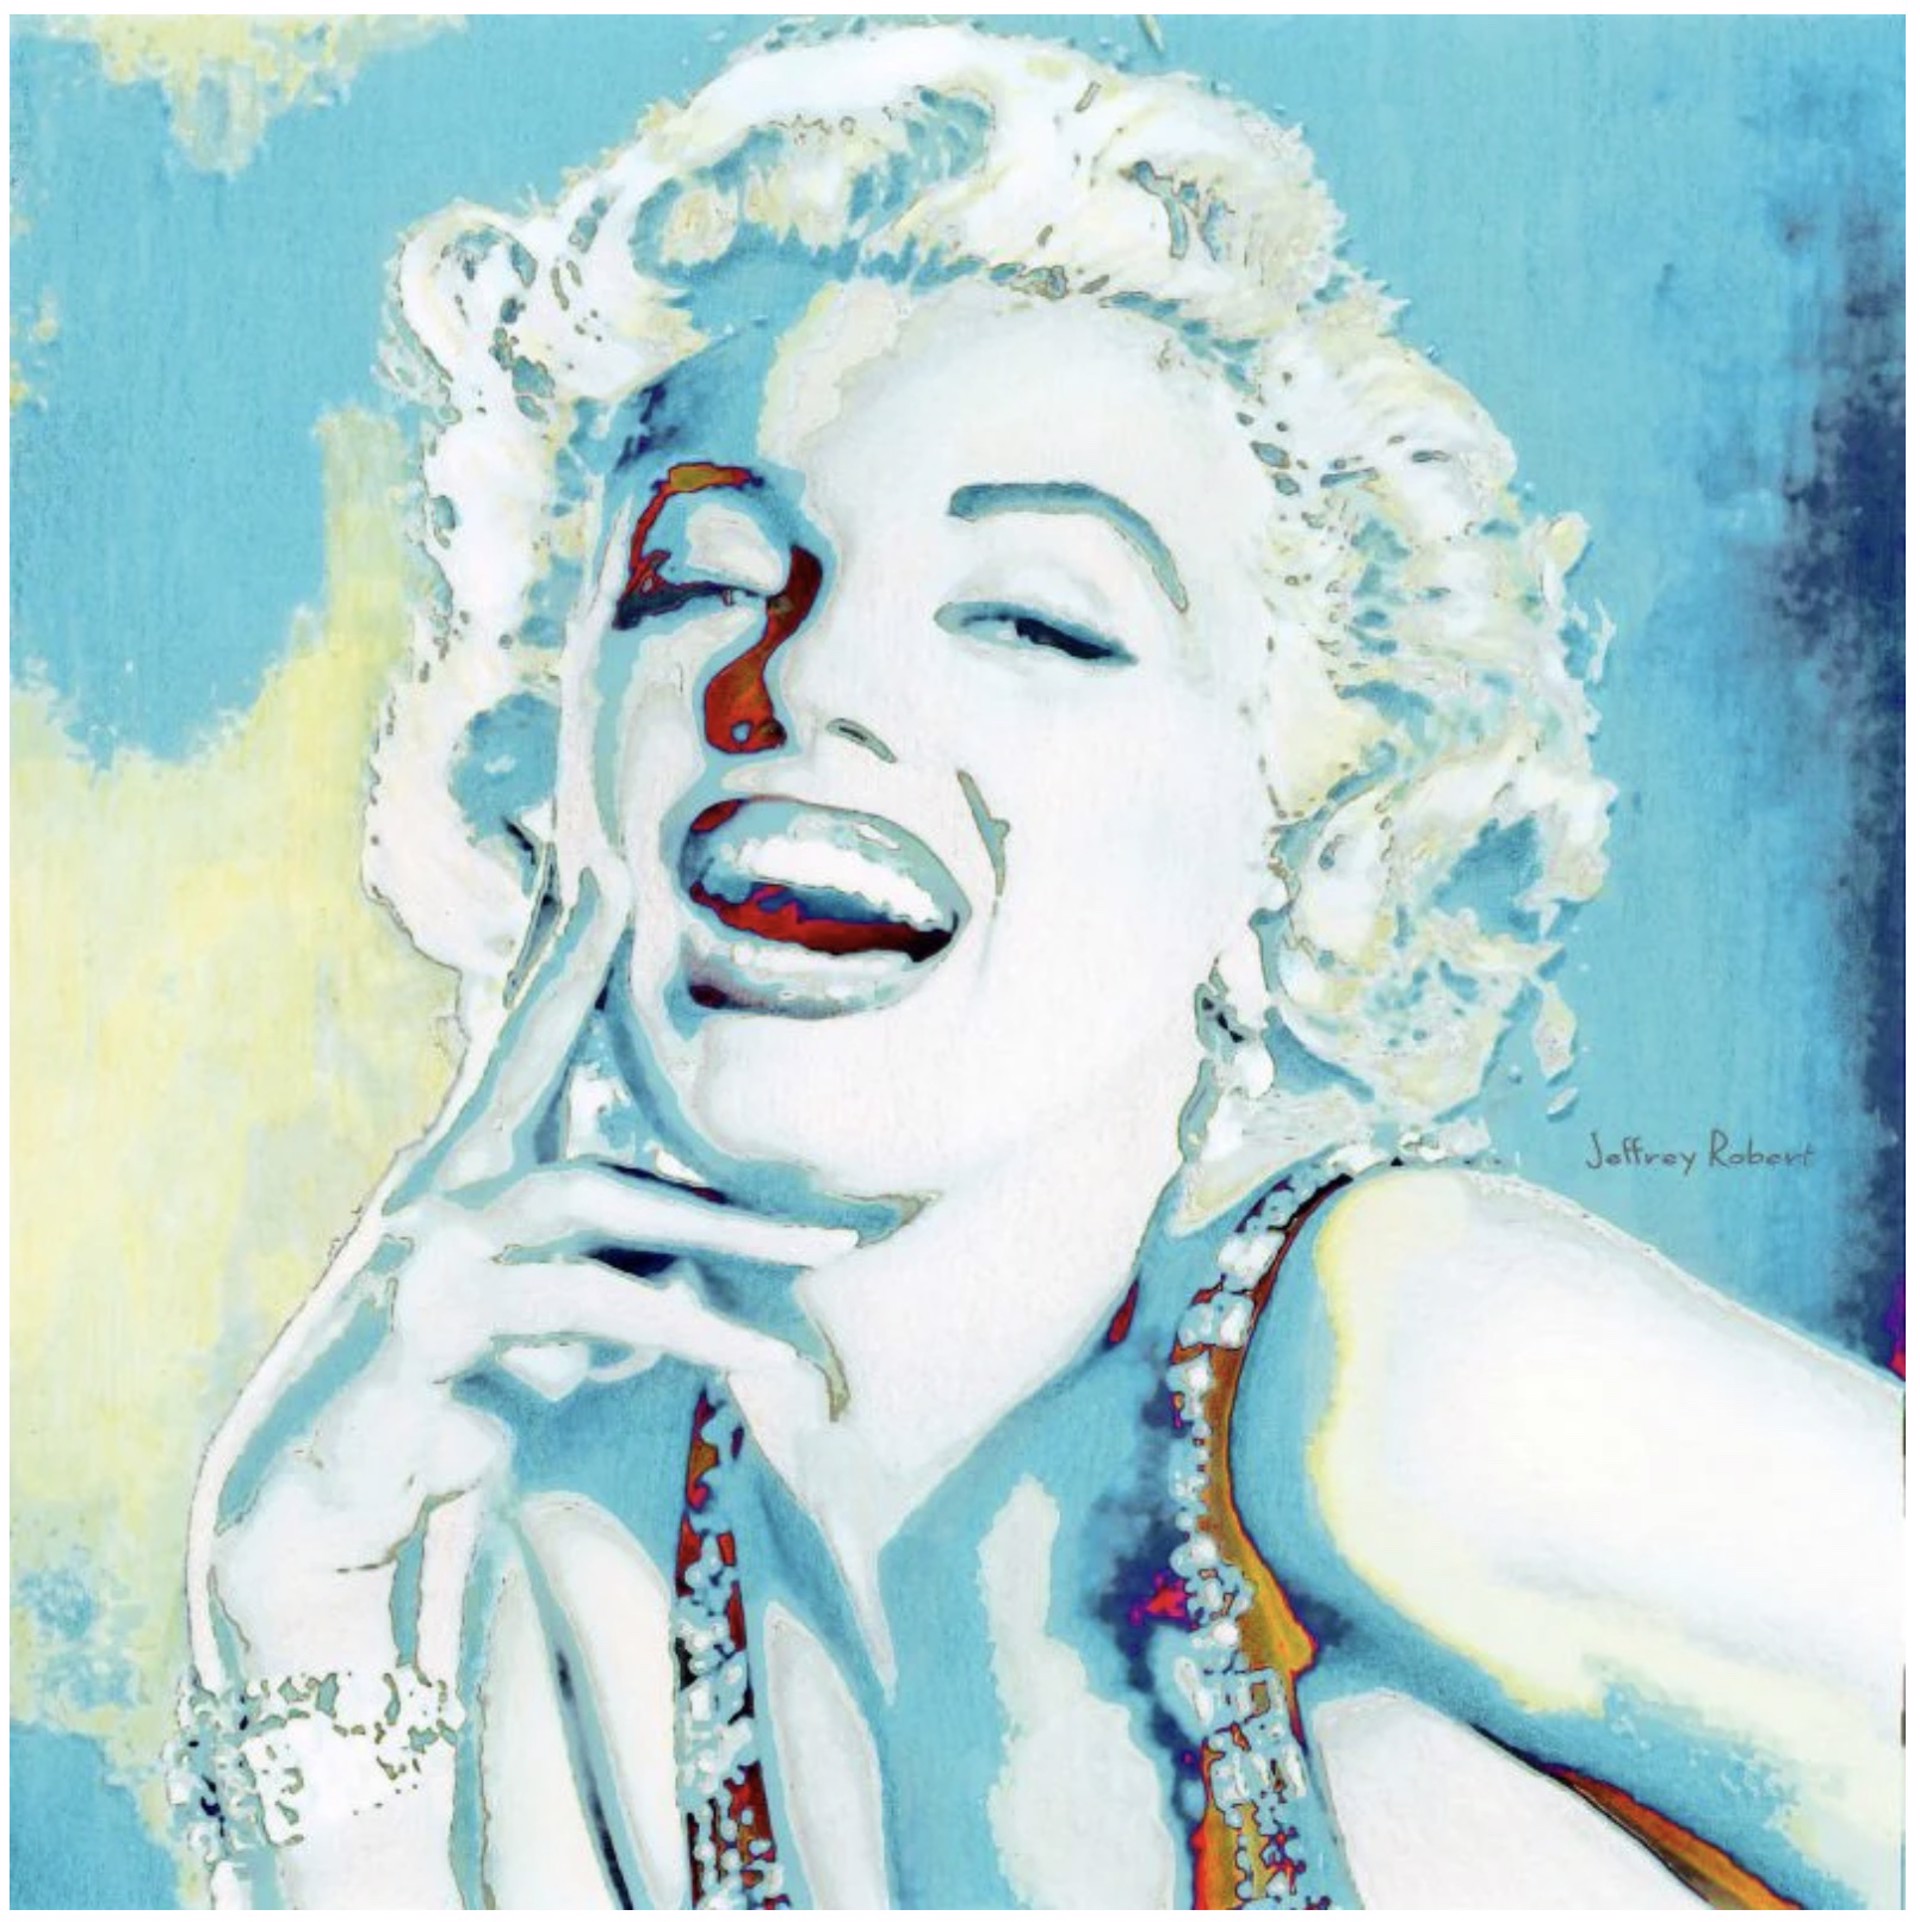 Blue Marilyn by Jeffrey Robert